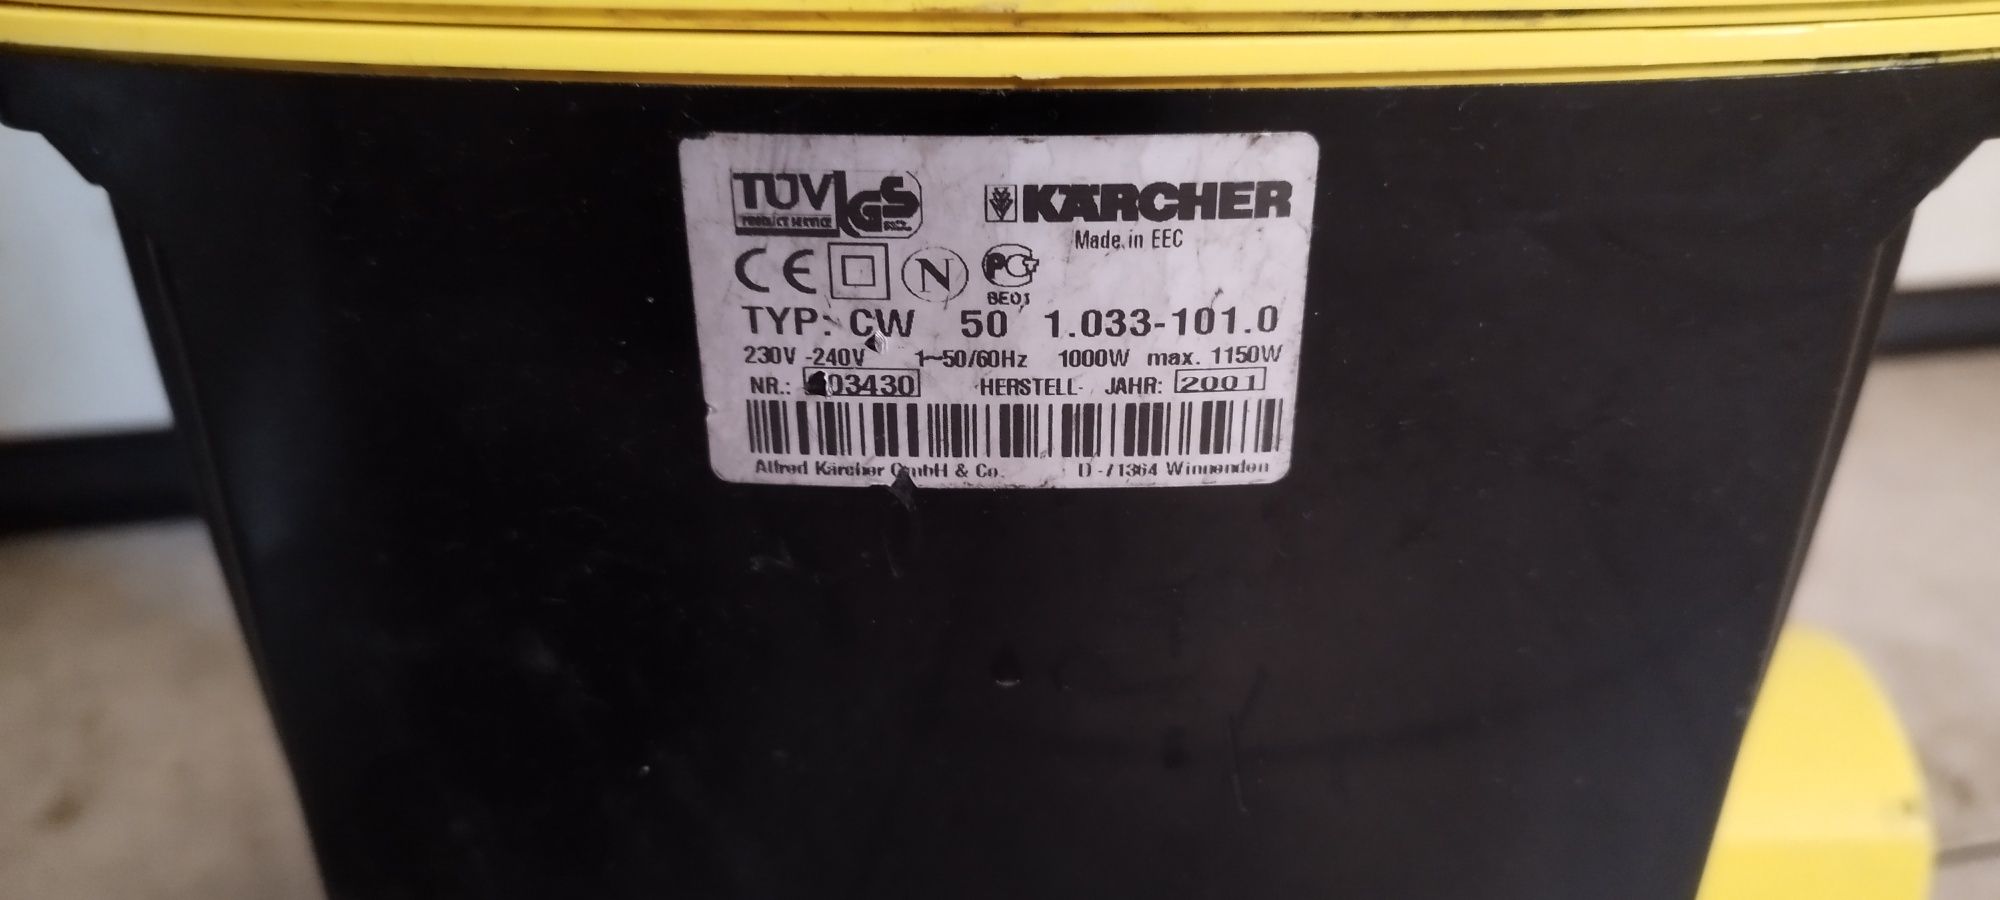 Karcher CW 50 odkurzacz pionowy